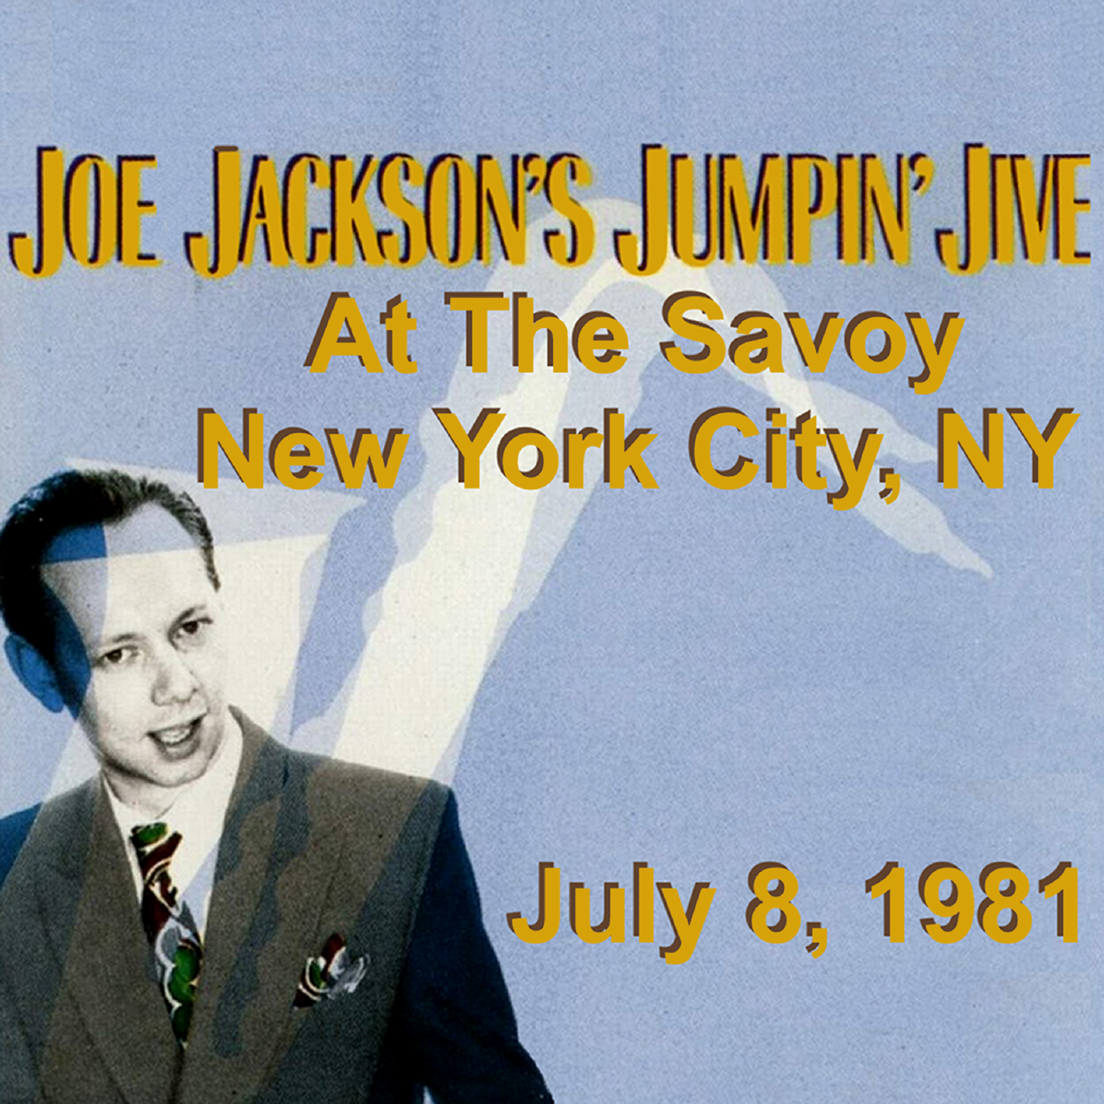 JoeJackson1981-07-08JumpinJiveAtTheSavoyNYC (3).png